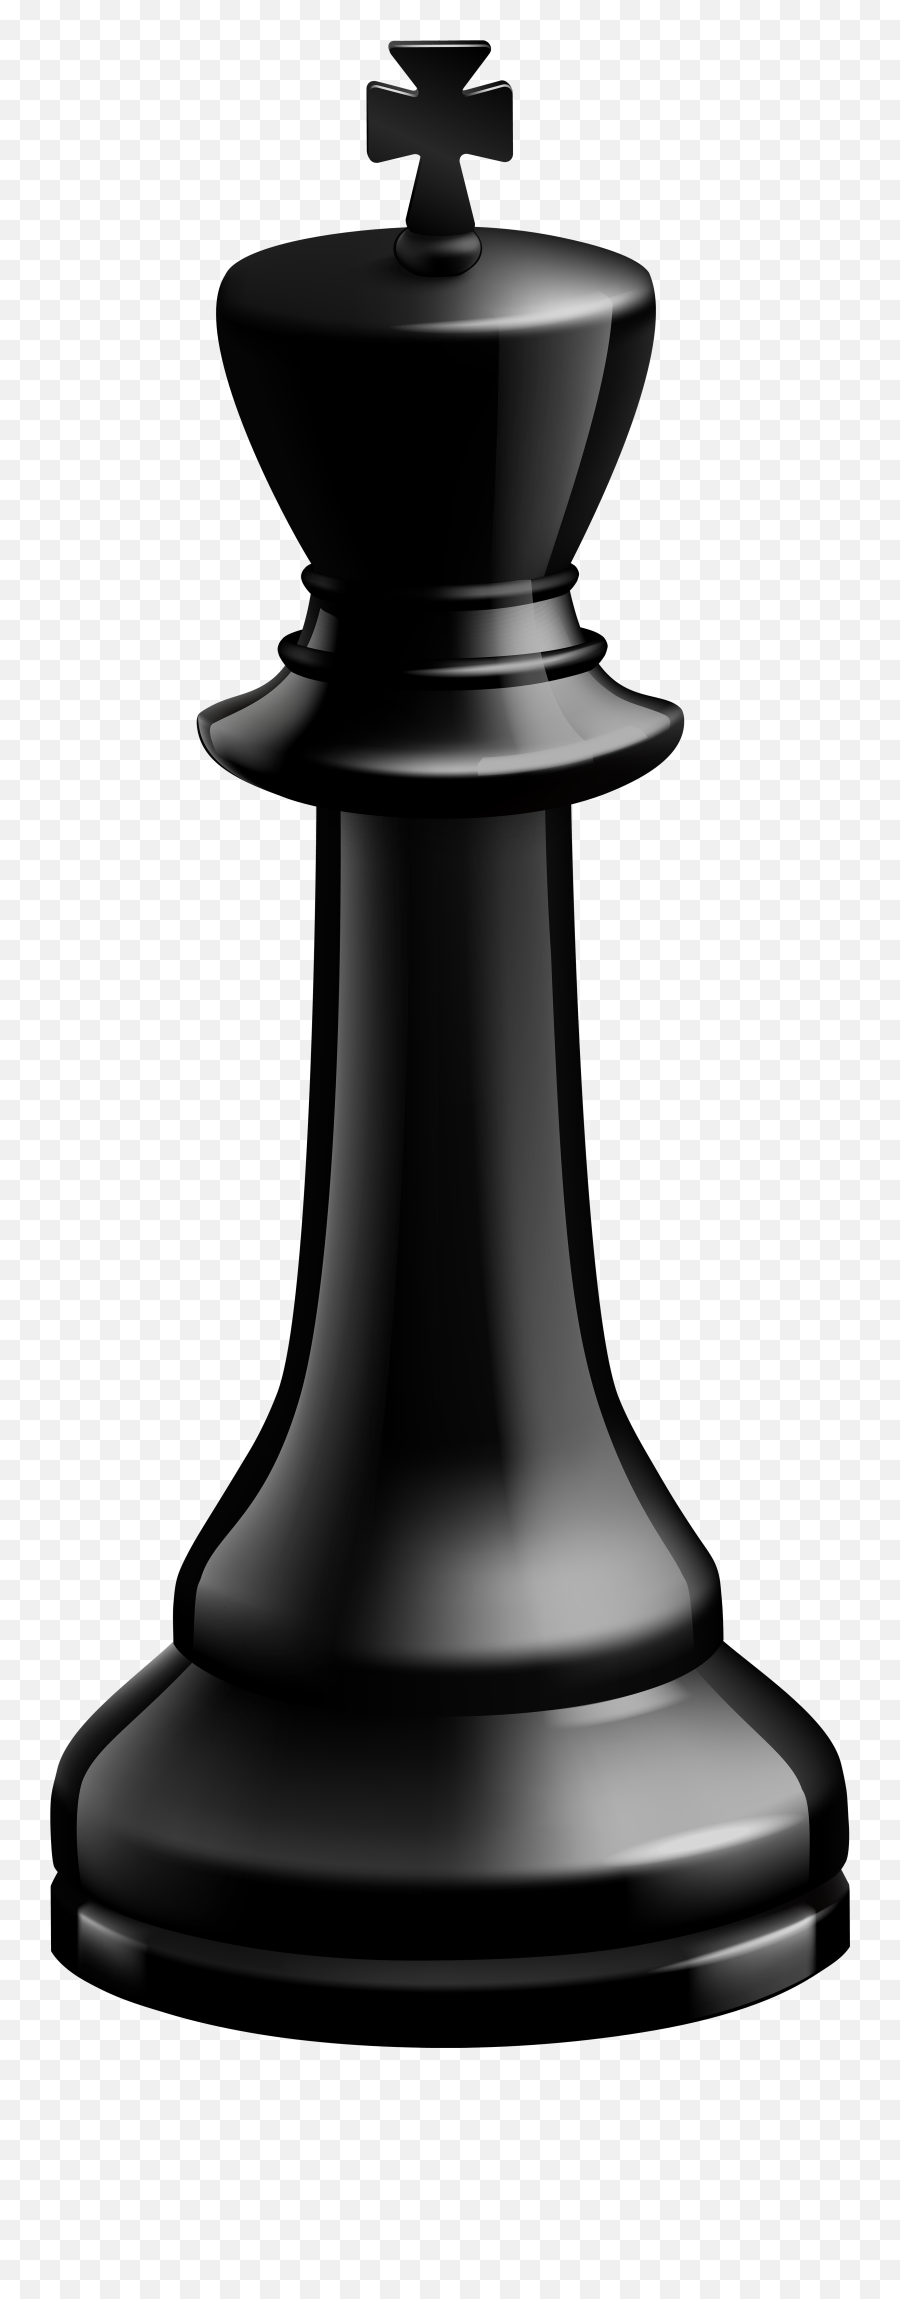 Pin On Sadler Center - Black King Chess Piece Png Emoji,Emojis To Represent Alice In Wonderland